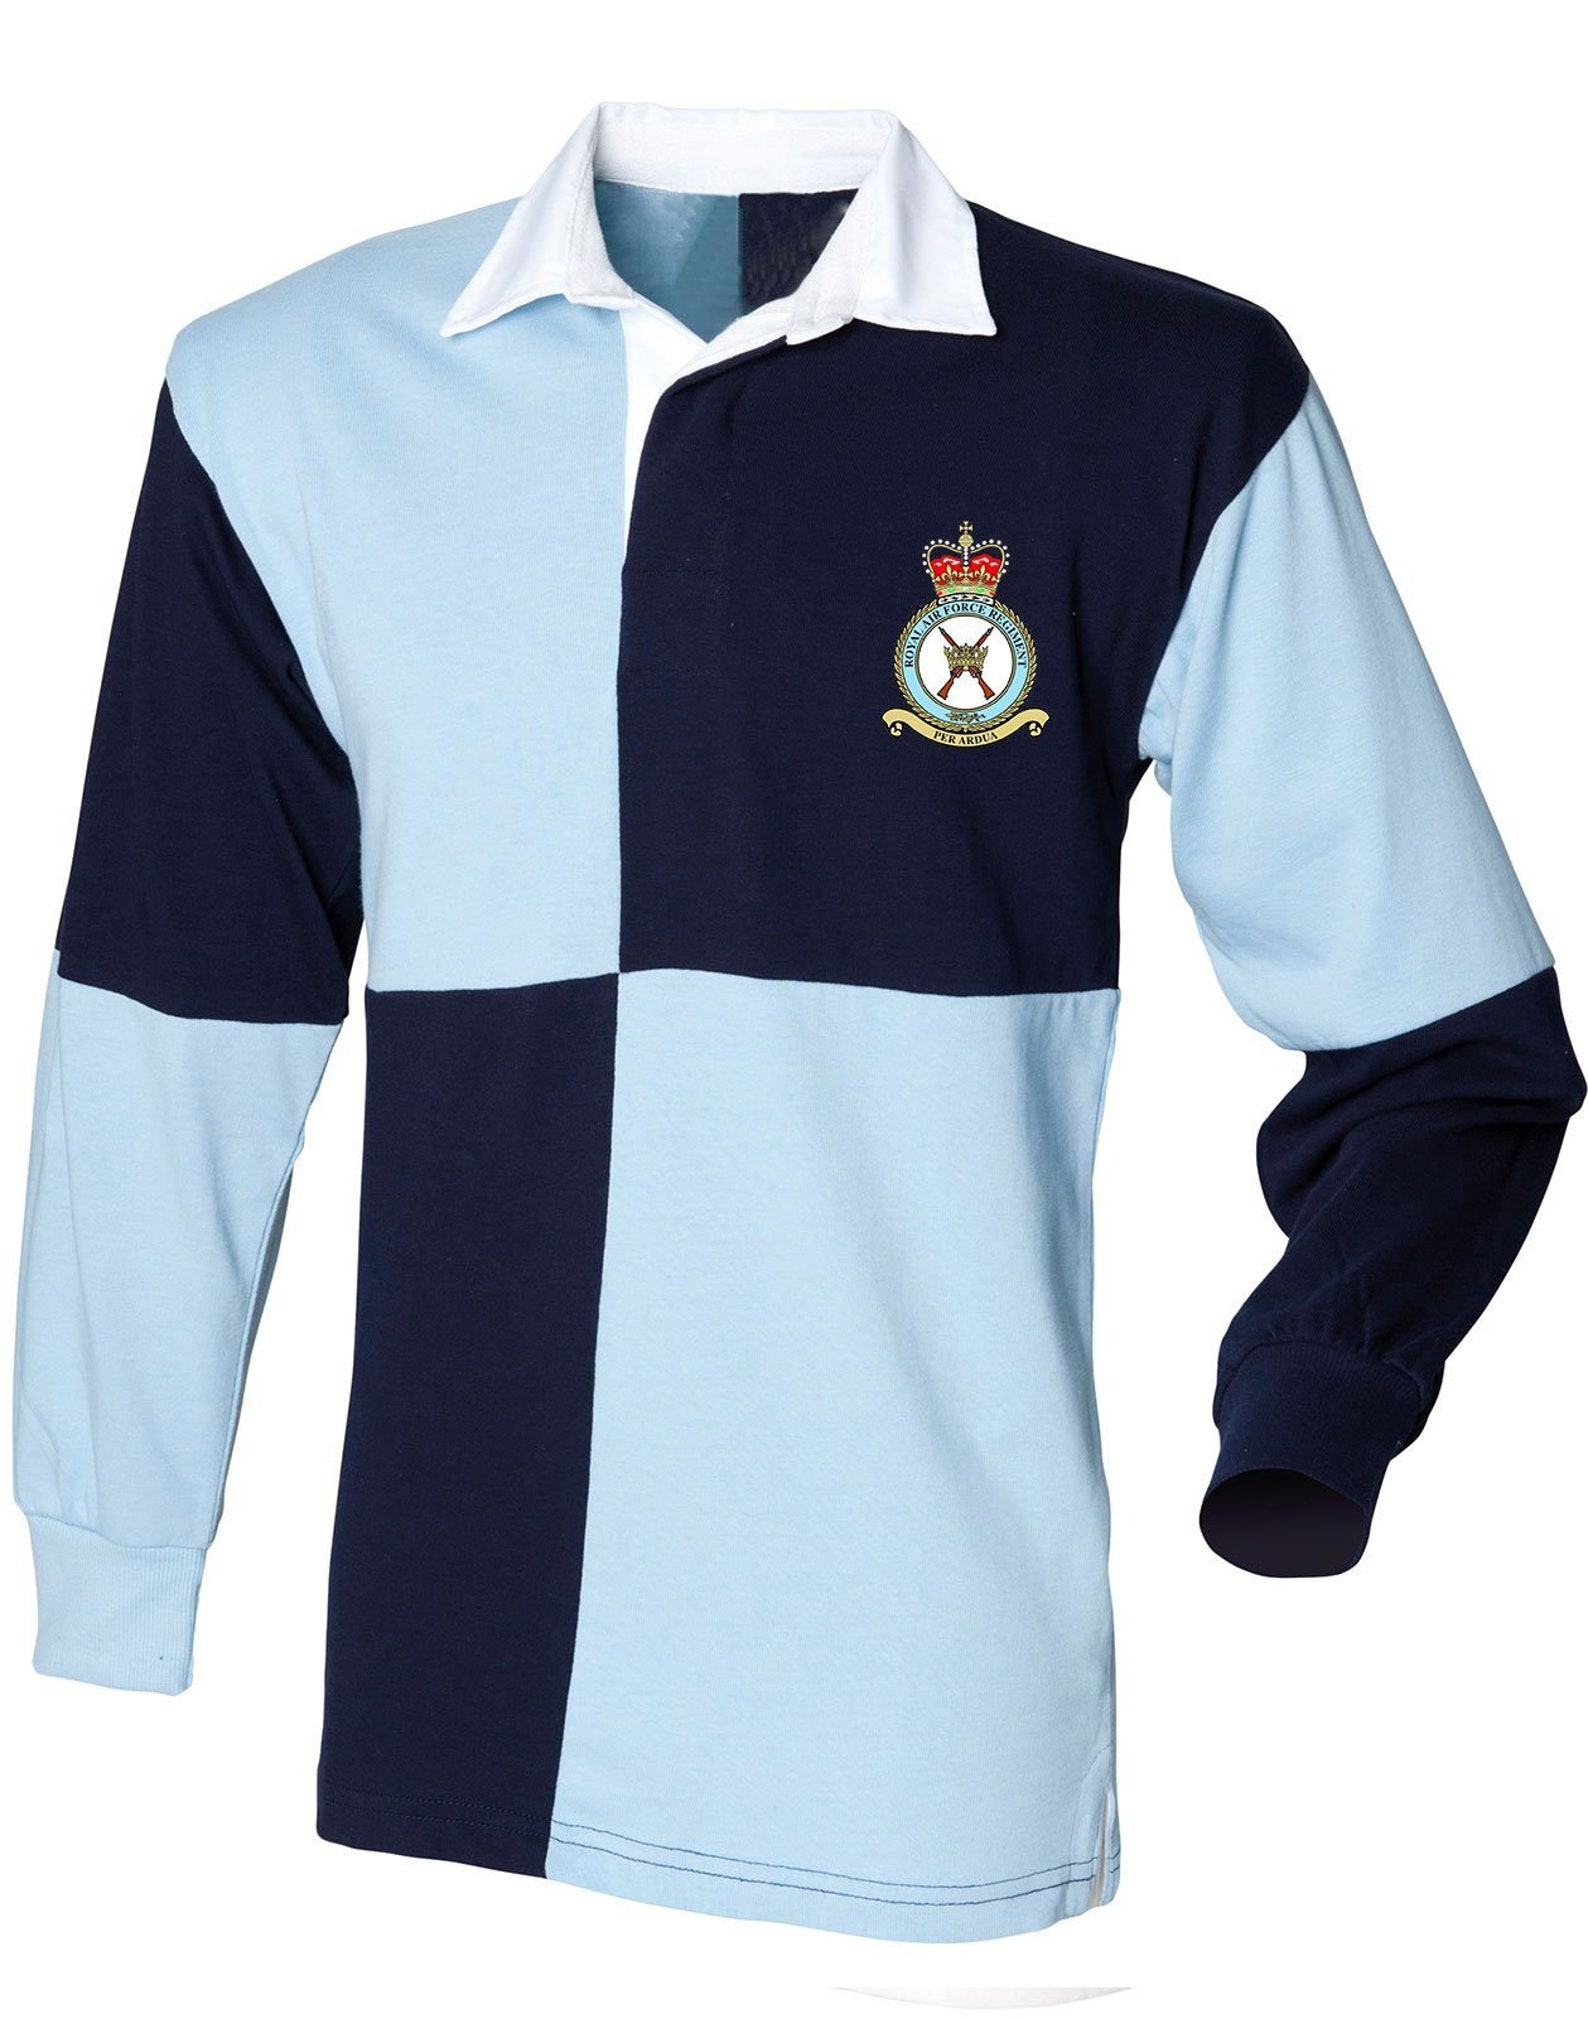 RAF REGIMENT Rugby Shirt - Etsy